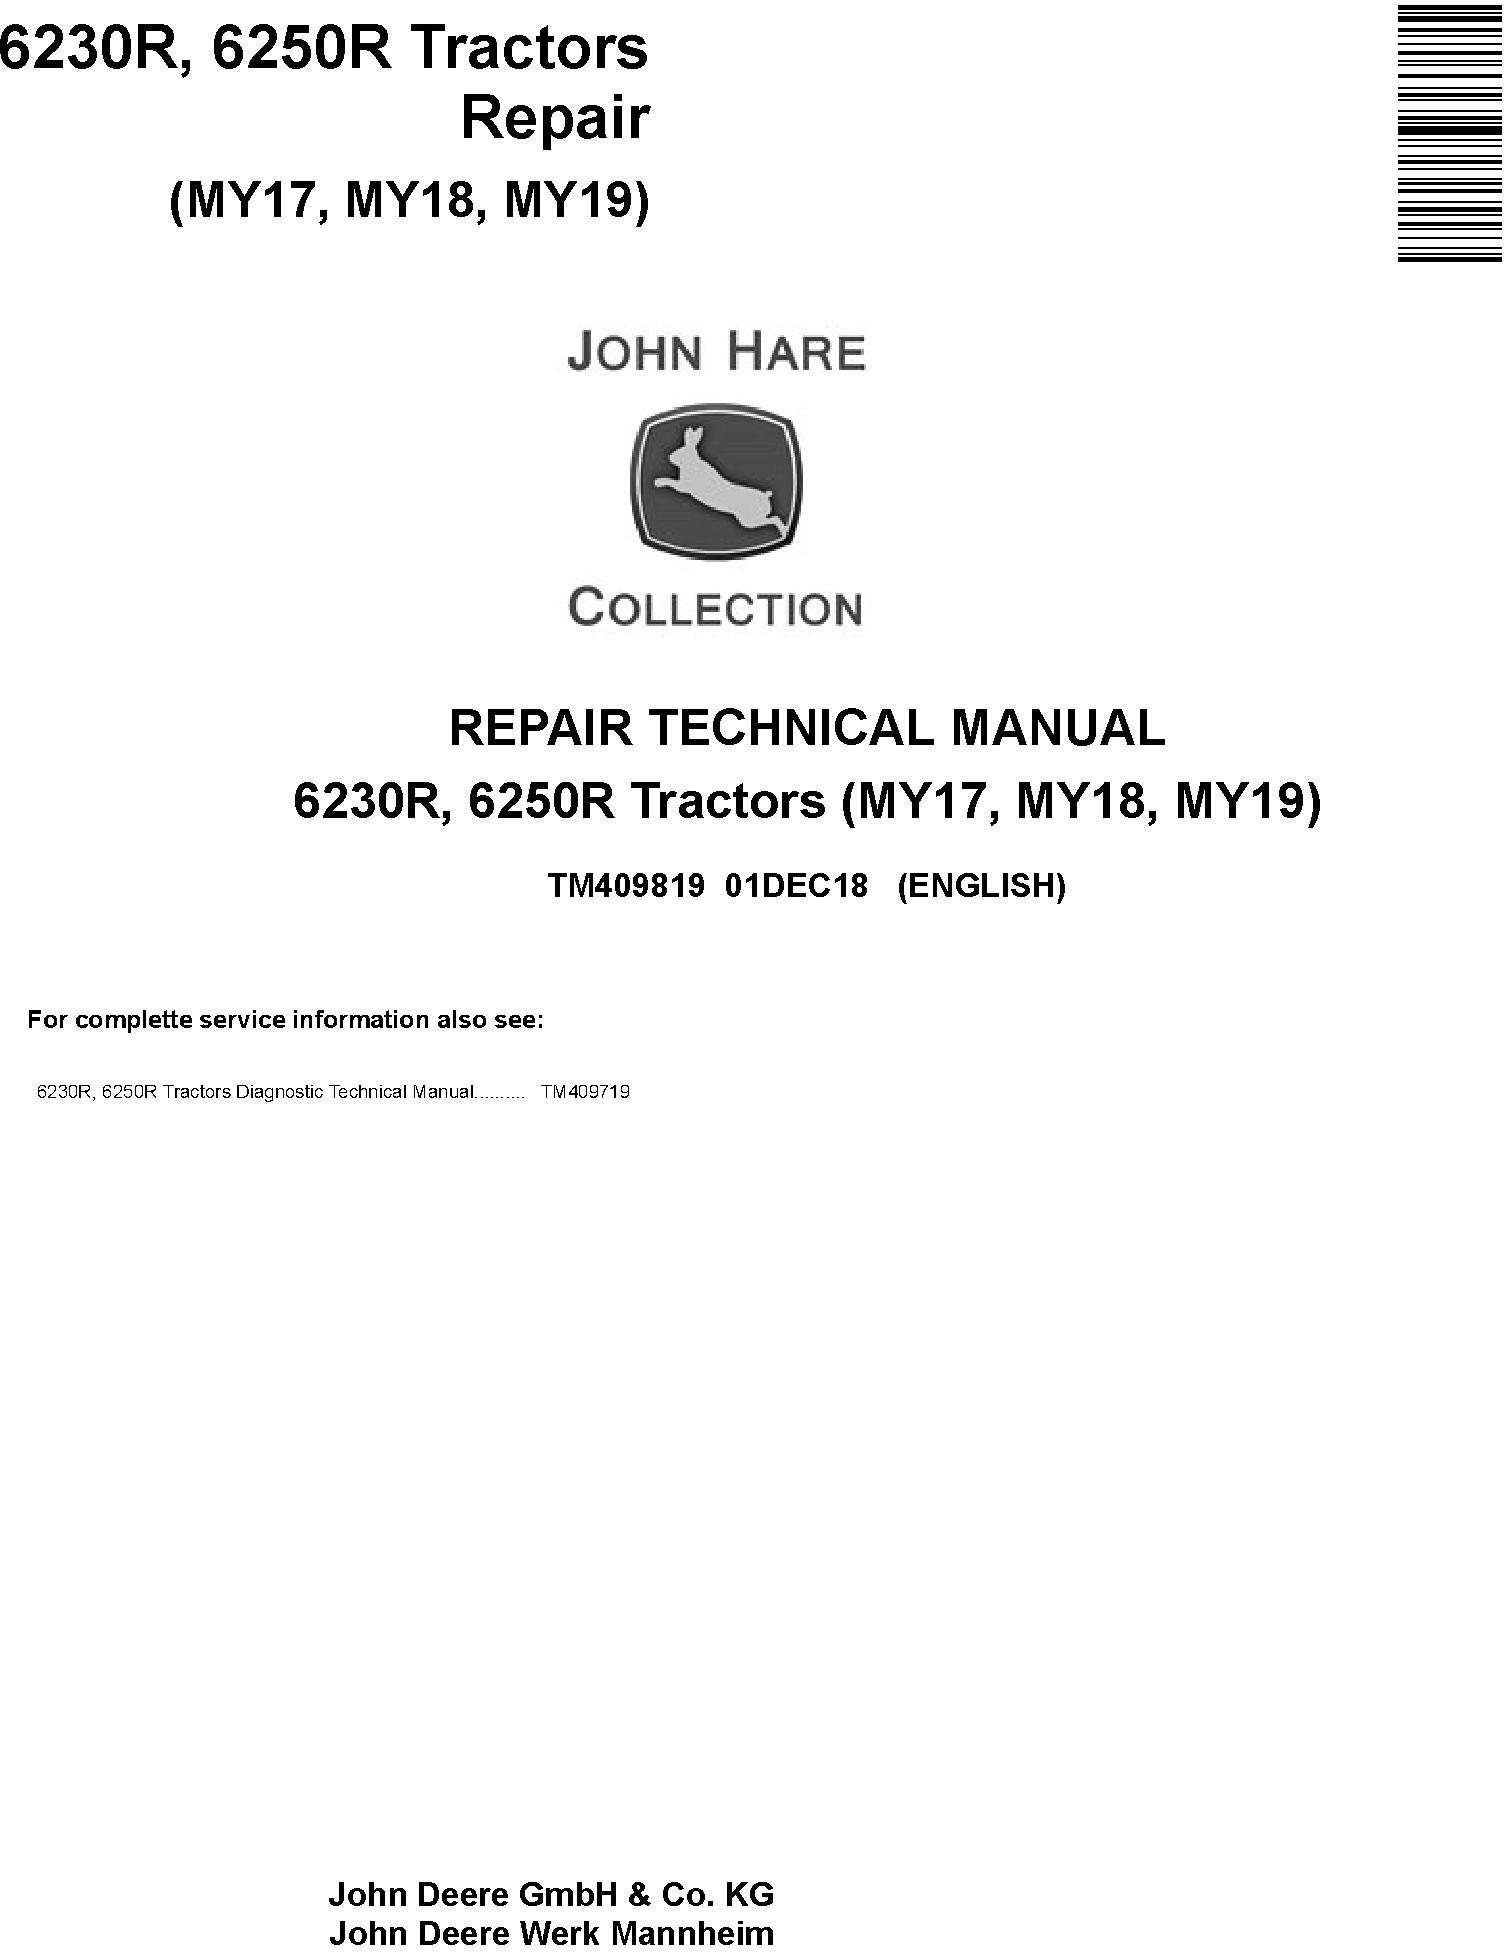 John Deere 6230R 6250R Tractor Repair Technical Manual TM409819